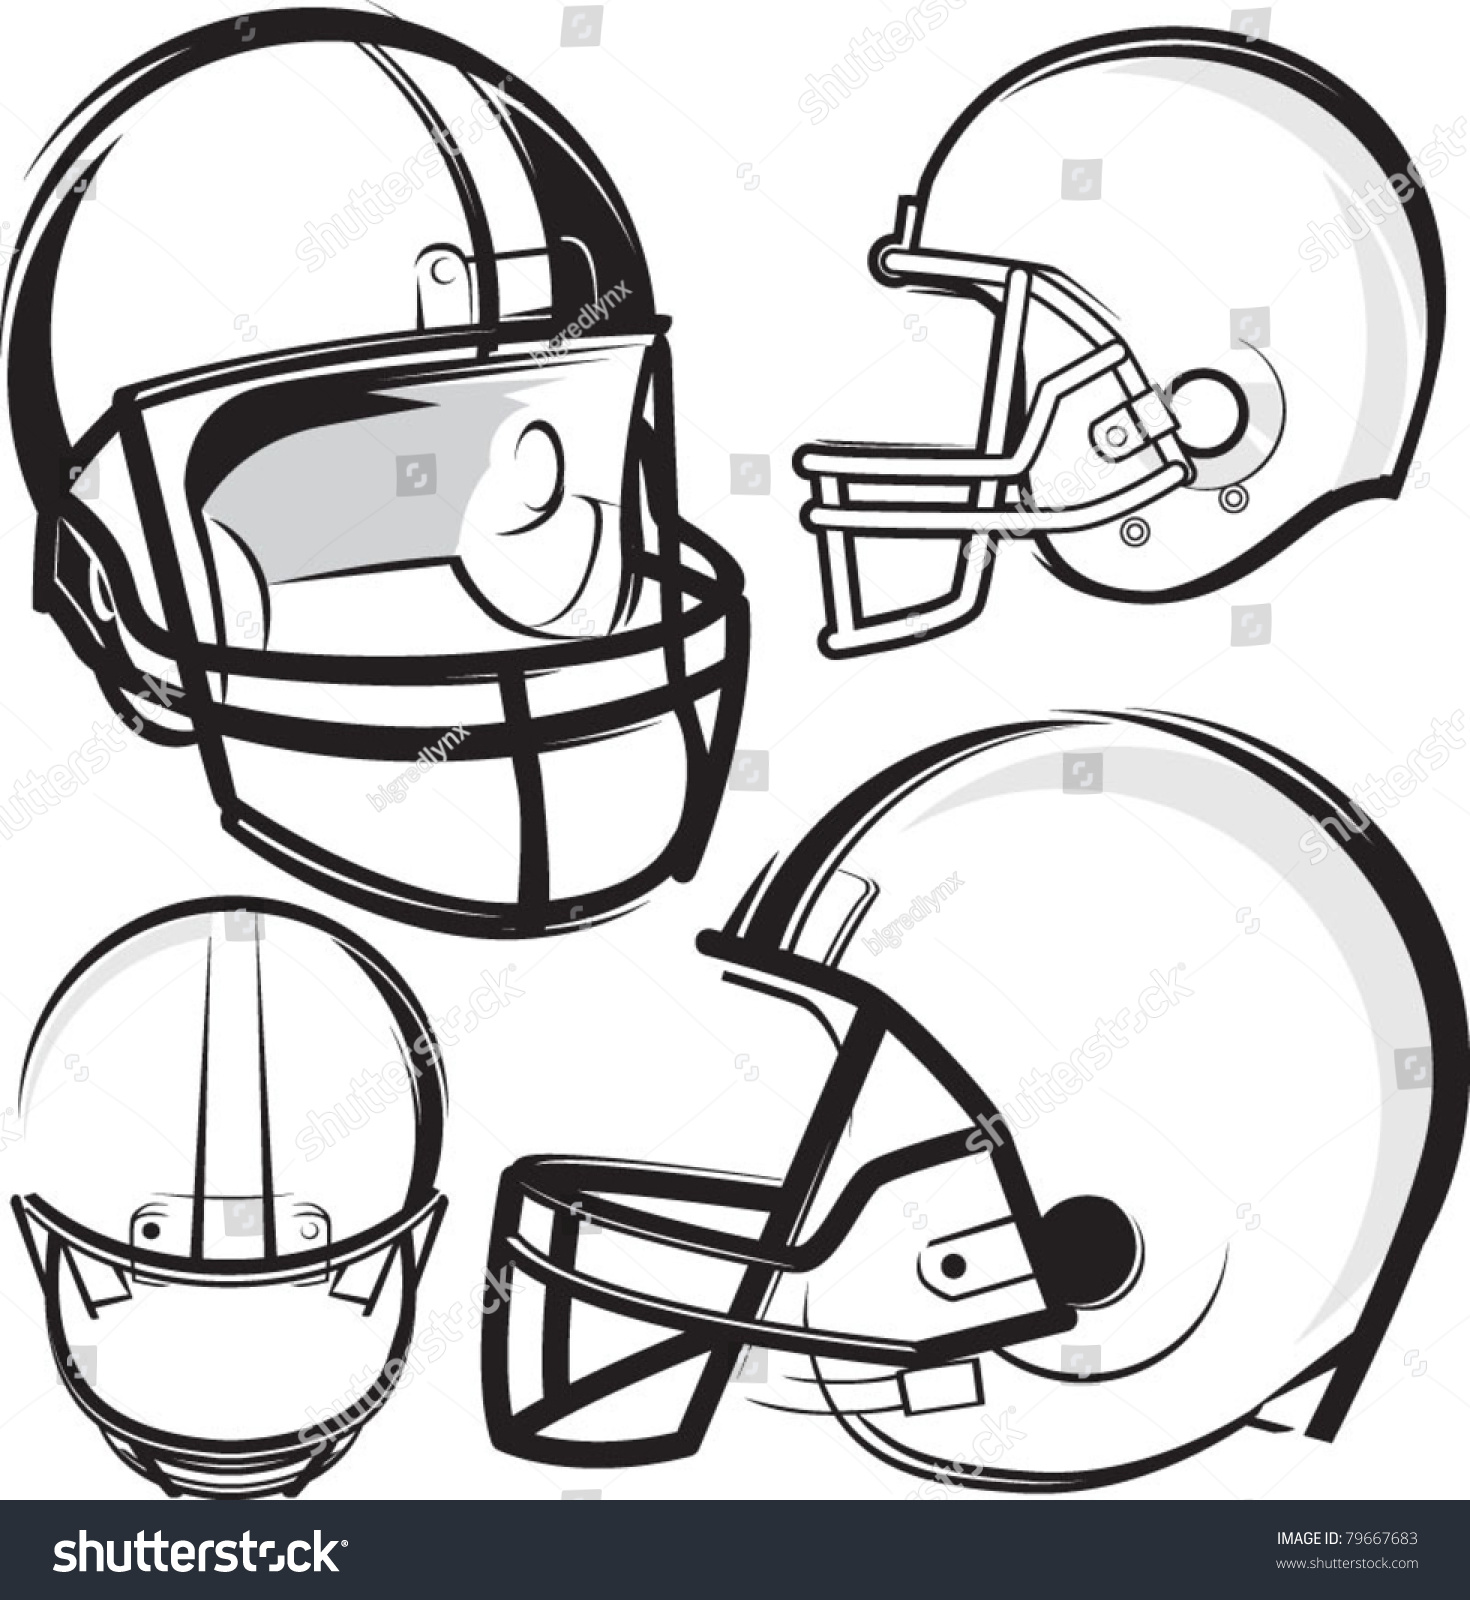 Football Helmets Stock Vector Illustration 79667683 : Shutterstock